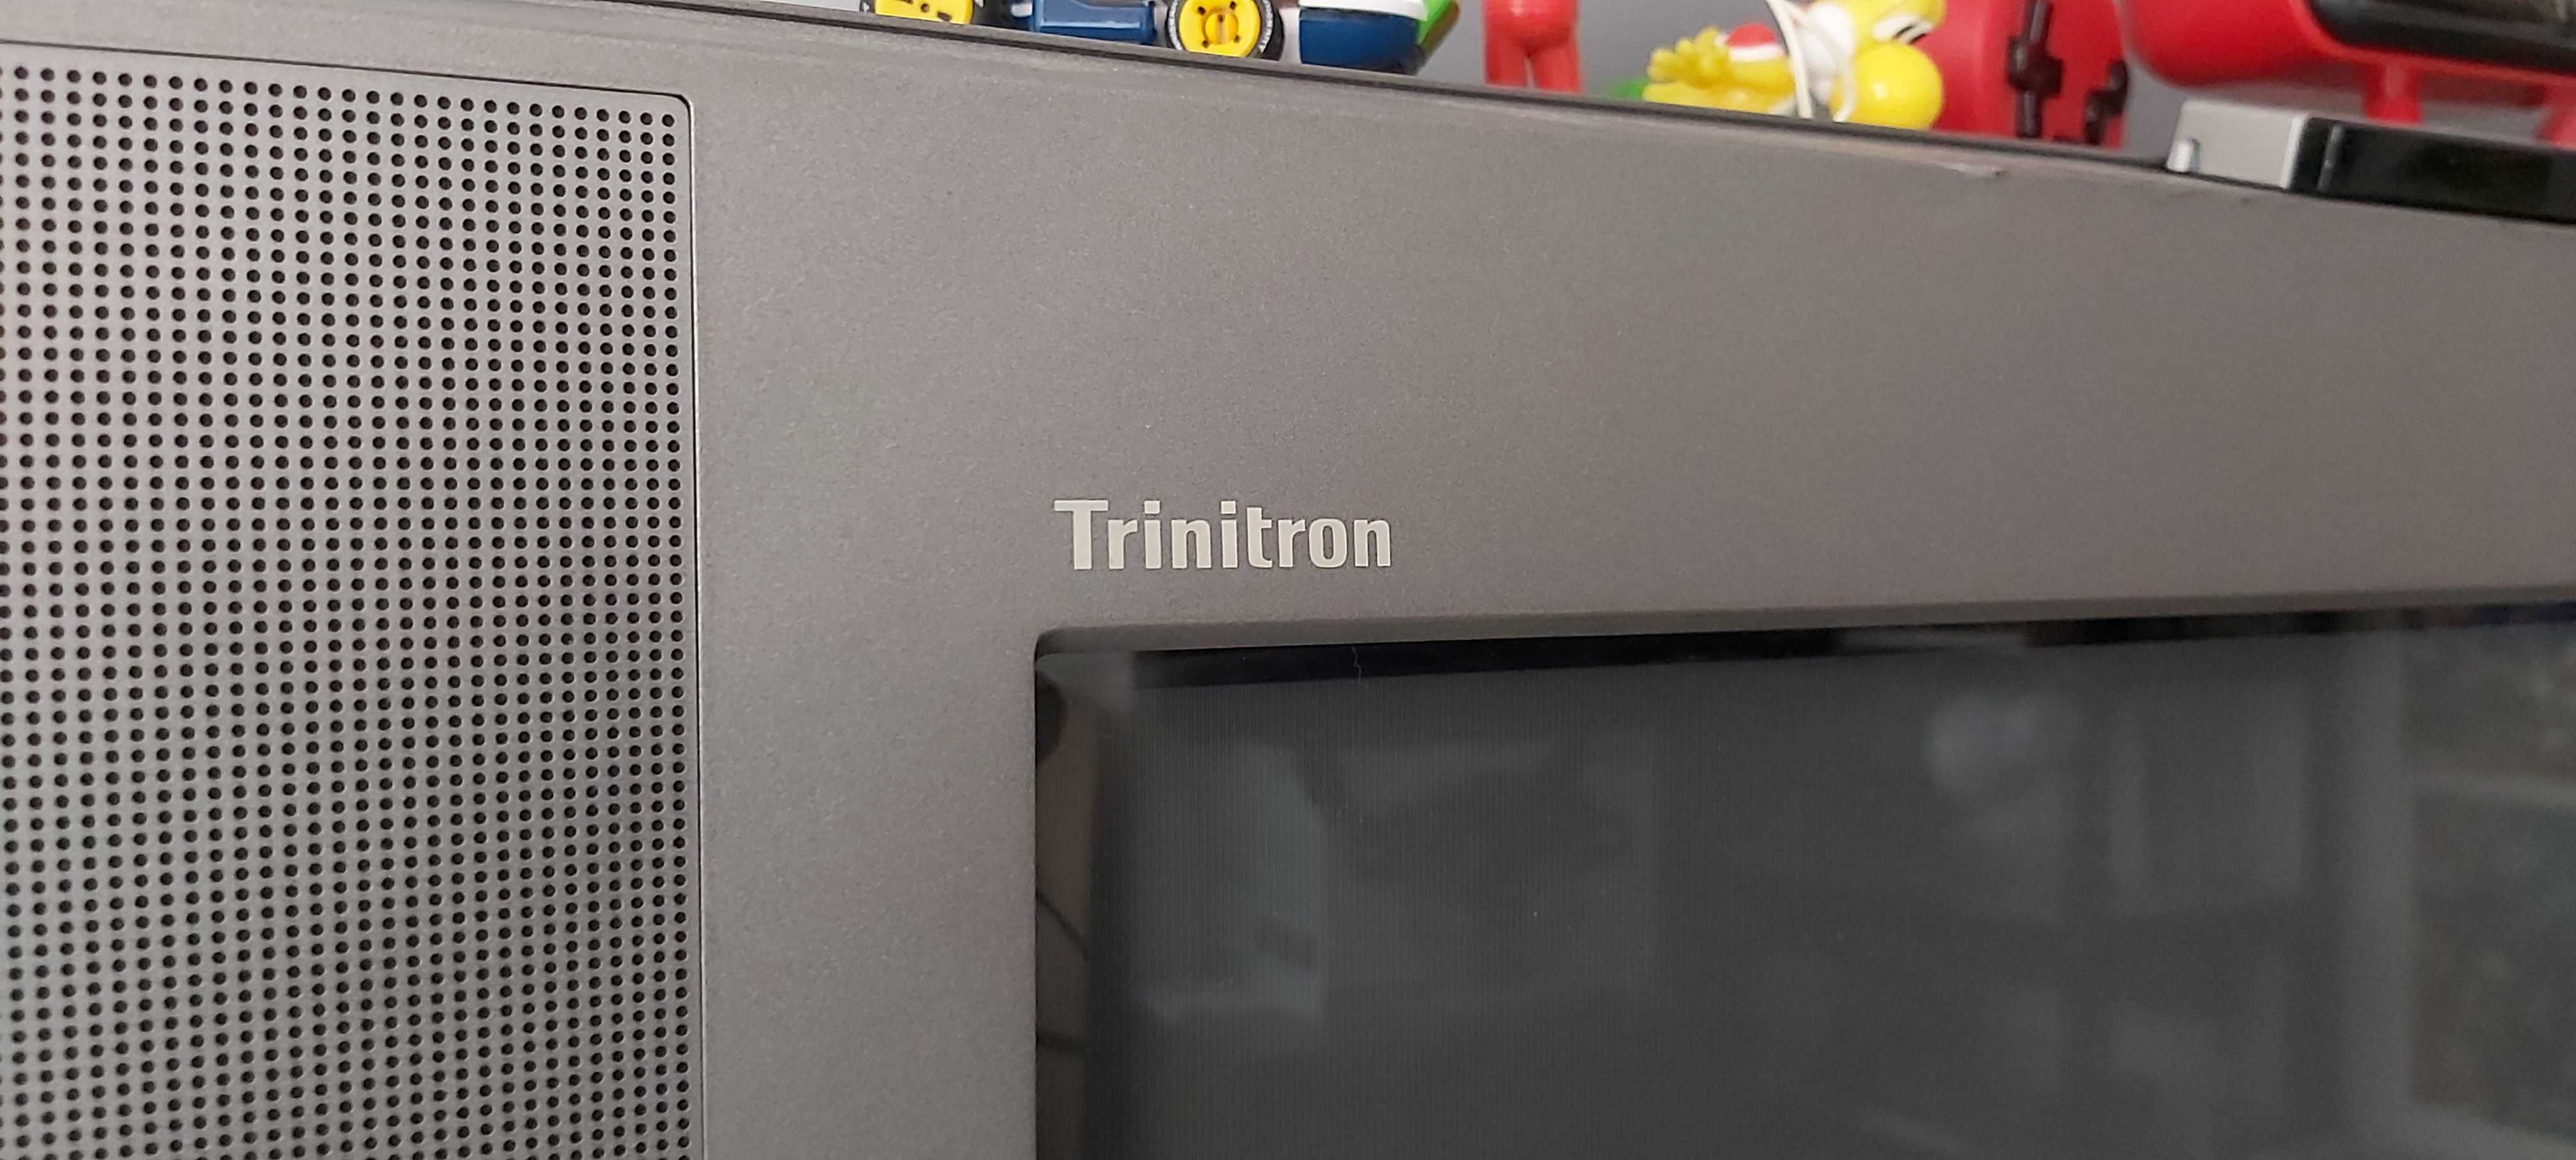 TV CRT Trinitron Sony 28' Tela Plana